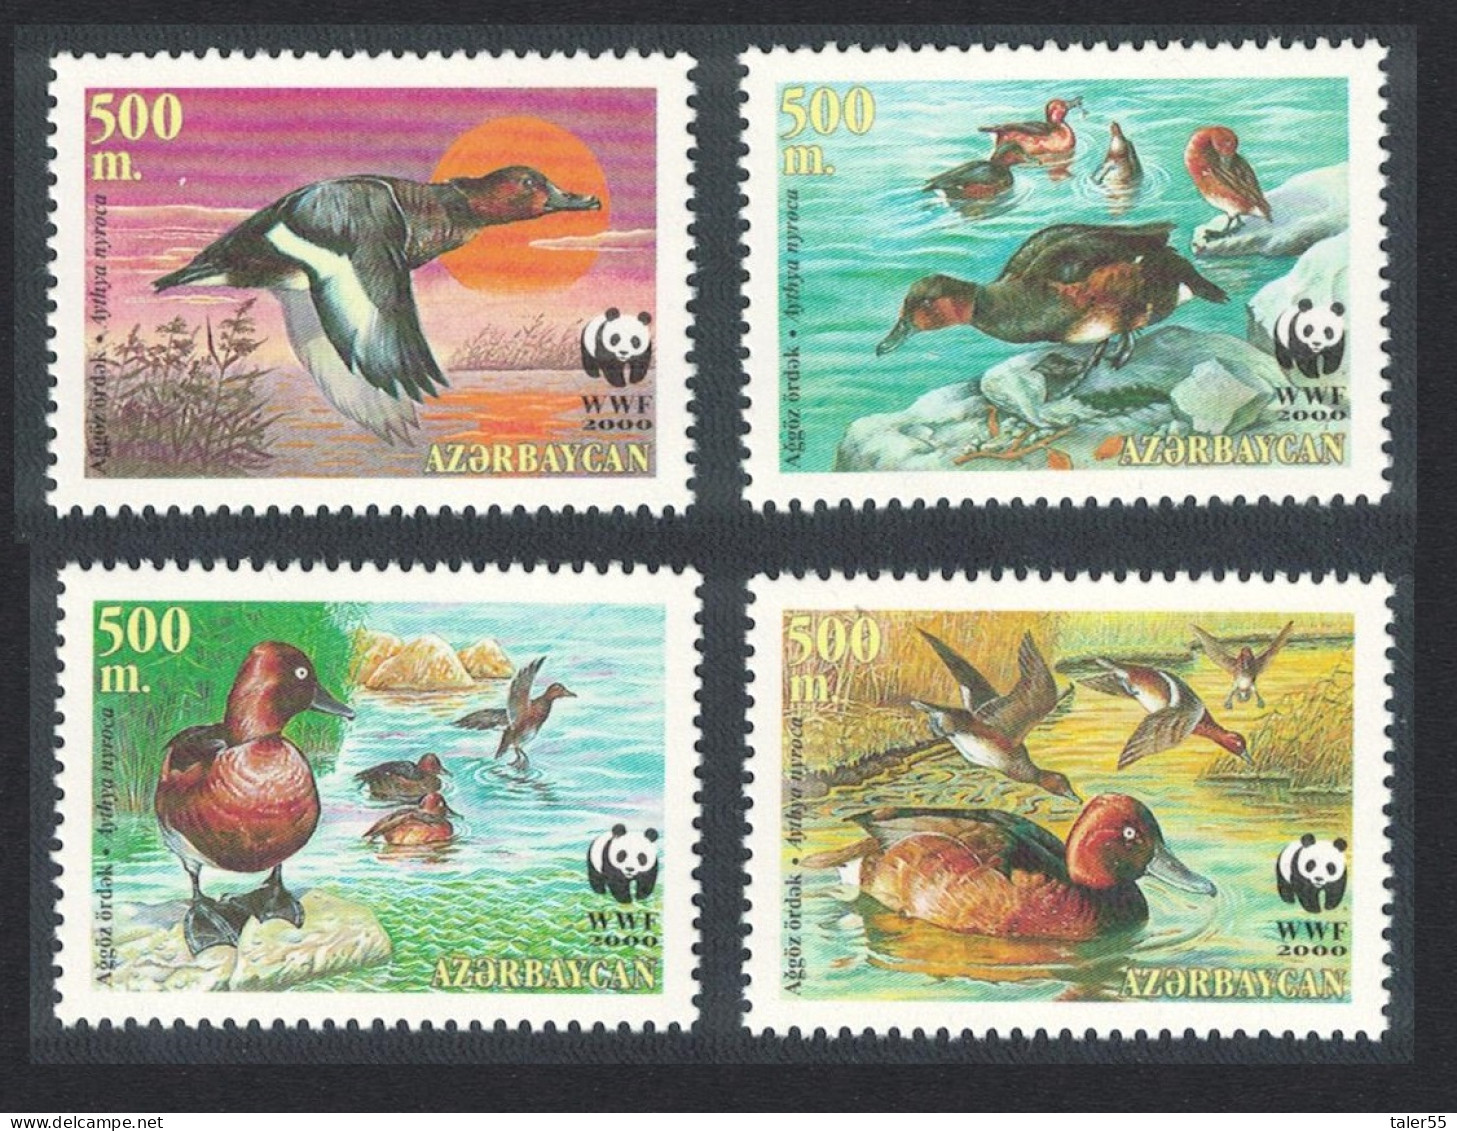 Azerbaijan WWF Birds Ferruginous Duck 4v 2000 MNH SG#480-483 MI#474-477 Sc#704 A-d - Aserbaidschan